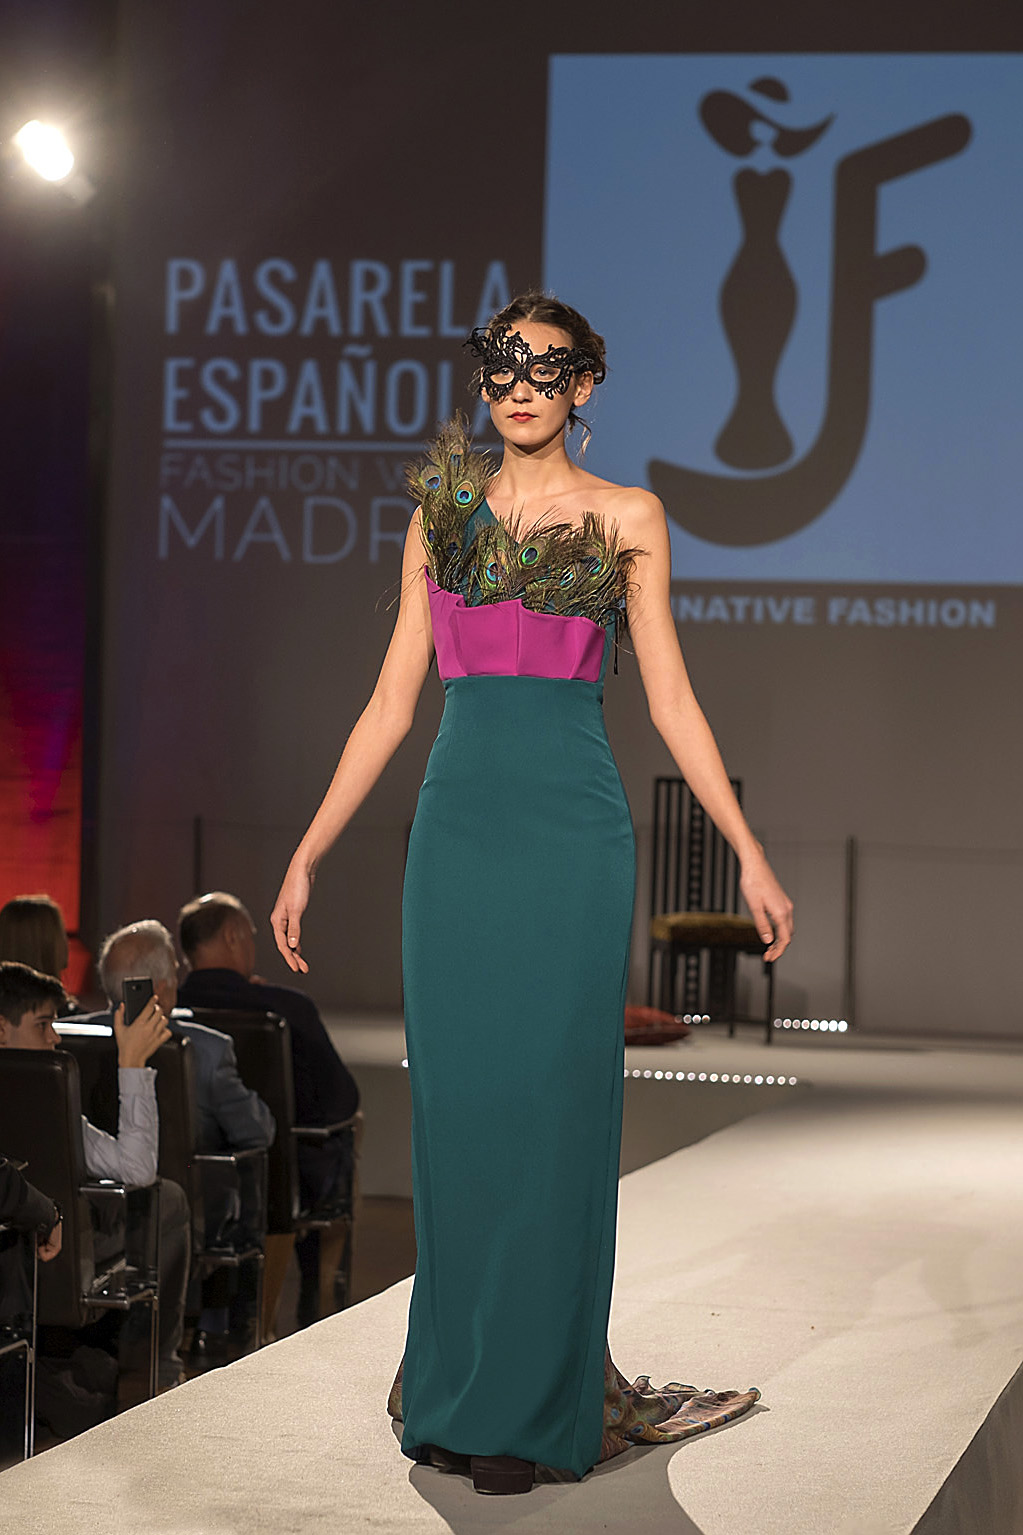 ‘Imaginative Fashion’ triunfa en la Semana de la Moda Española